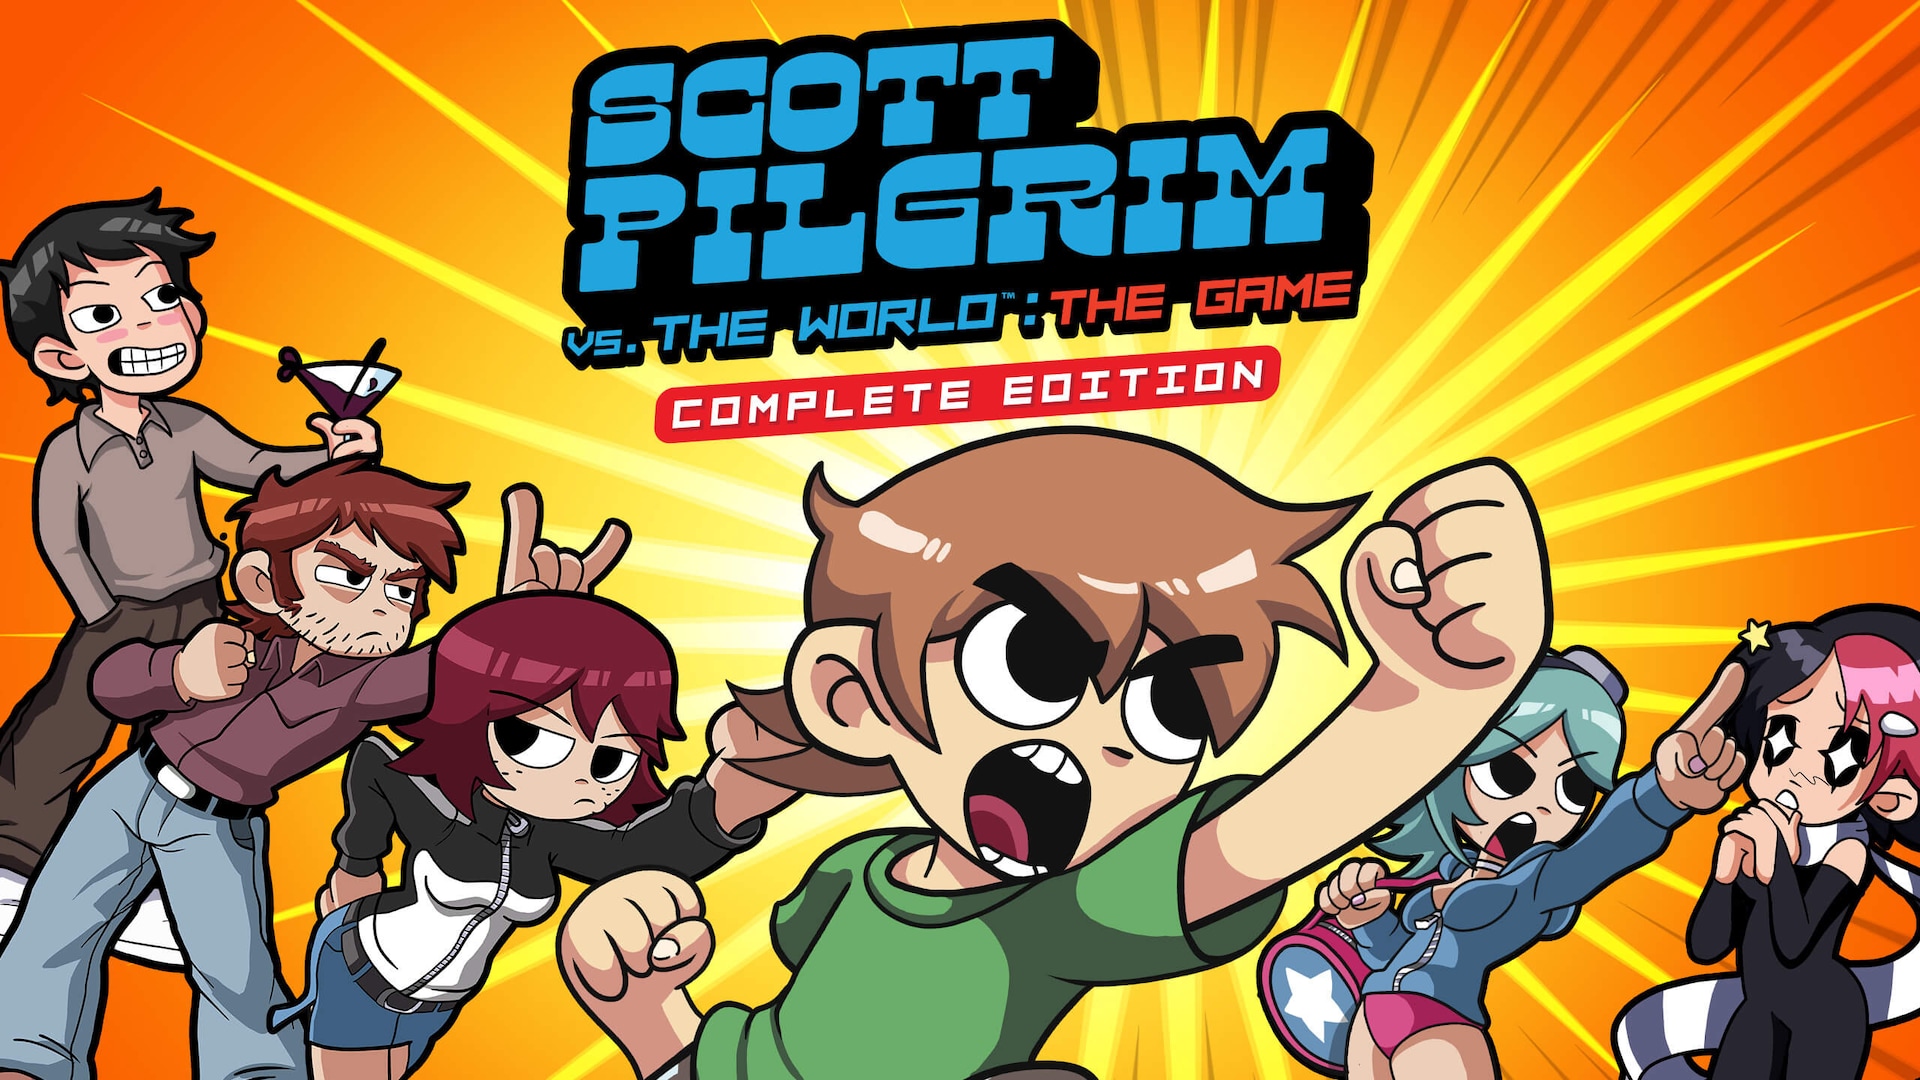 Celotna izdaja igre Scott Pilgrim Vs The World